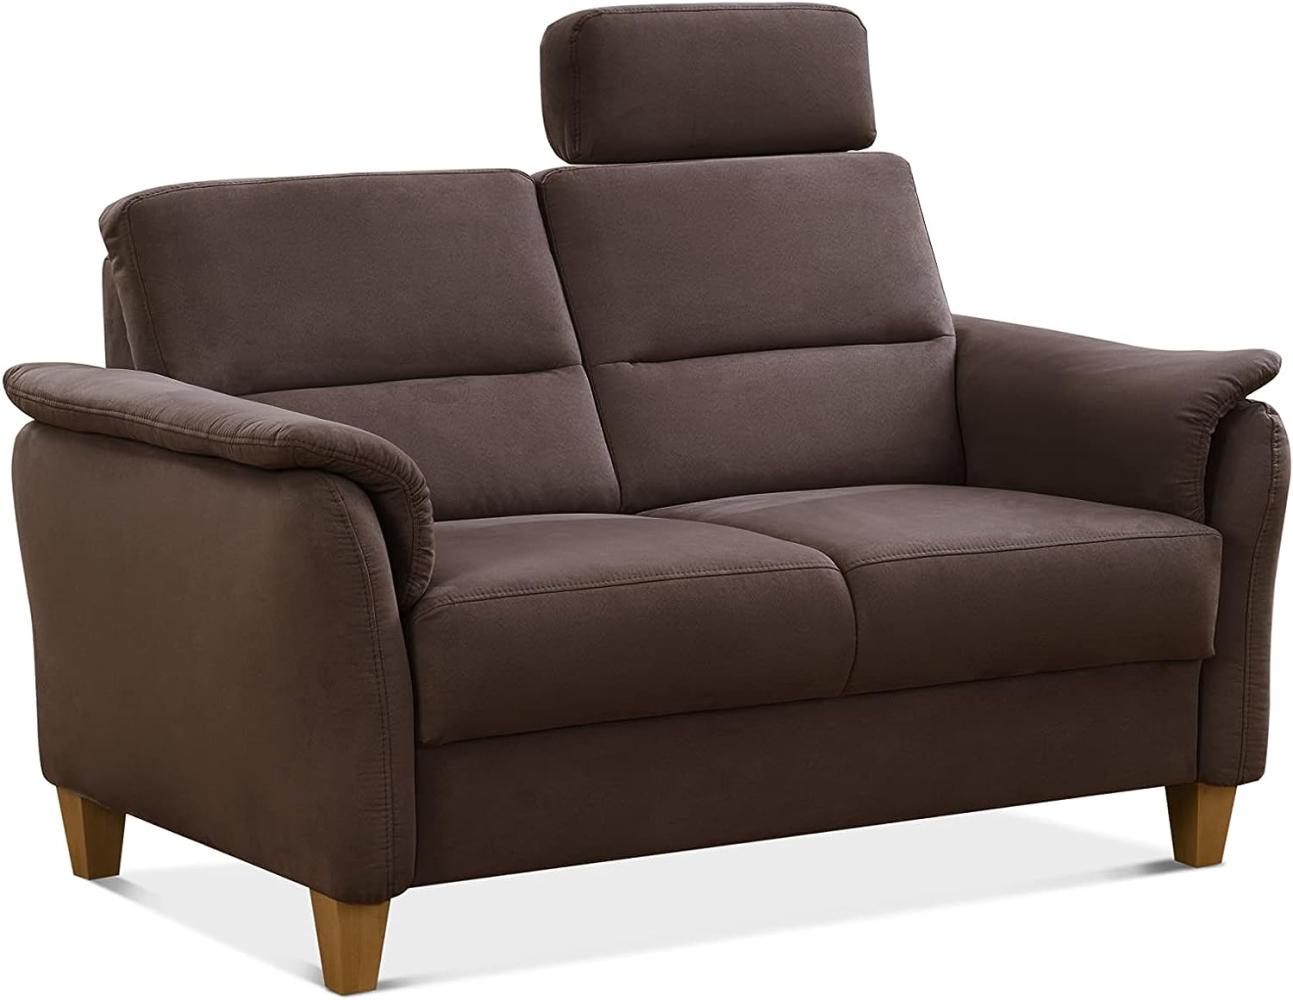 CAVADORE 2er-Sofa Palera mit Federkern / Kompakte Zweisitzer-Couch im Landhaus-Stil / inkl. 1 Kopfstütze / 149 x 89 x 89 / Mikrofaser, Braun Bild 1